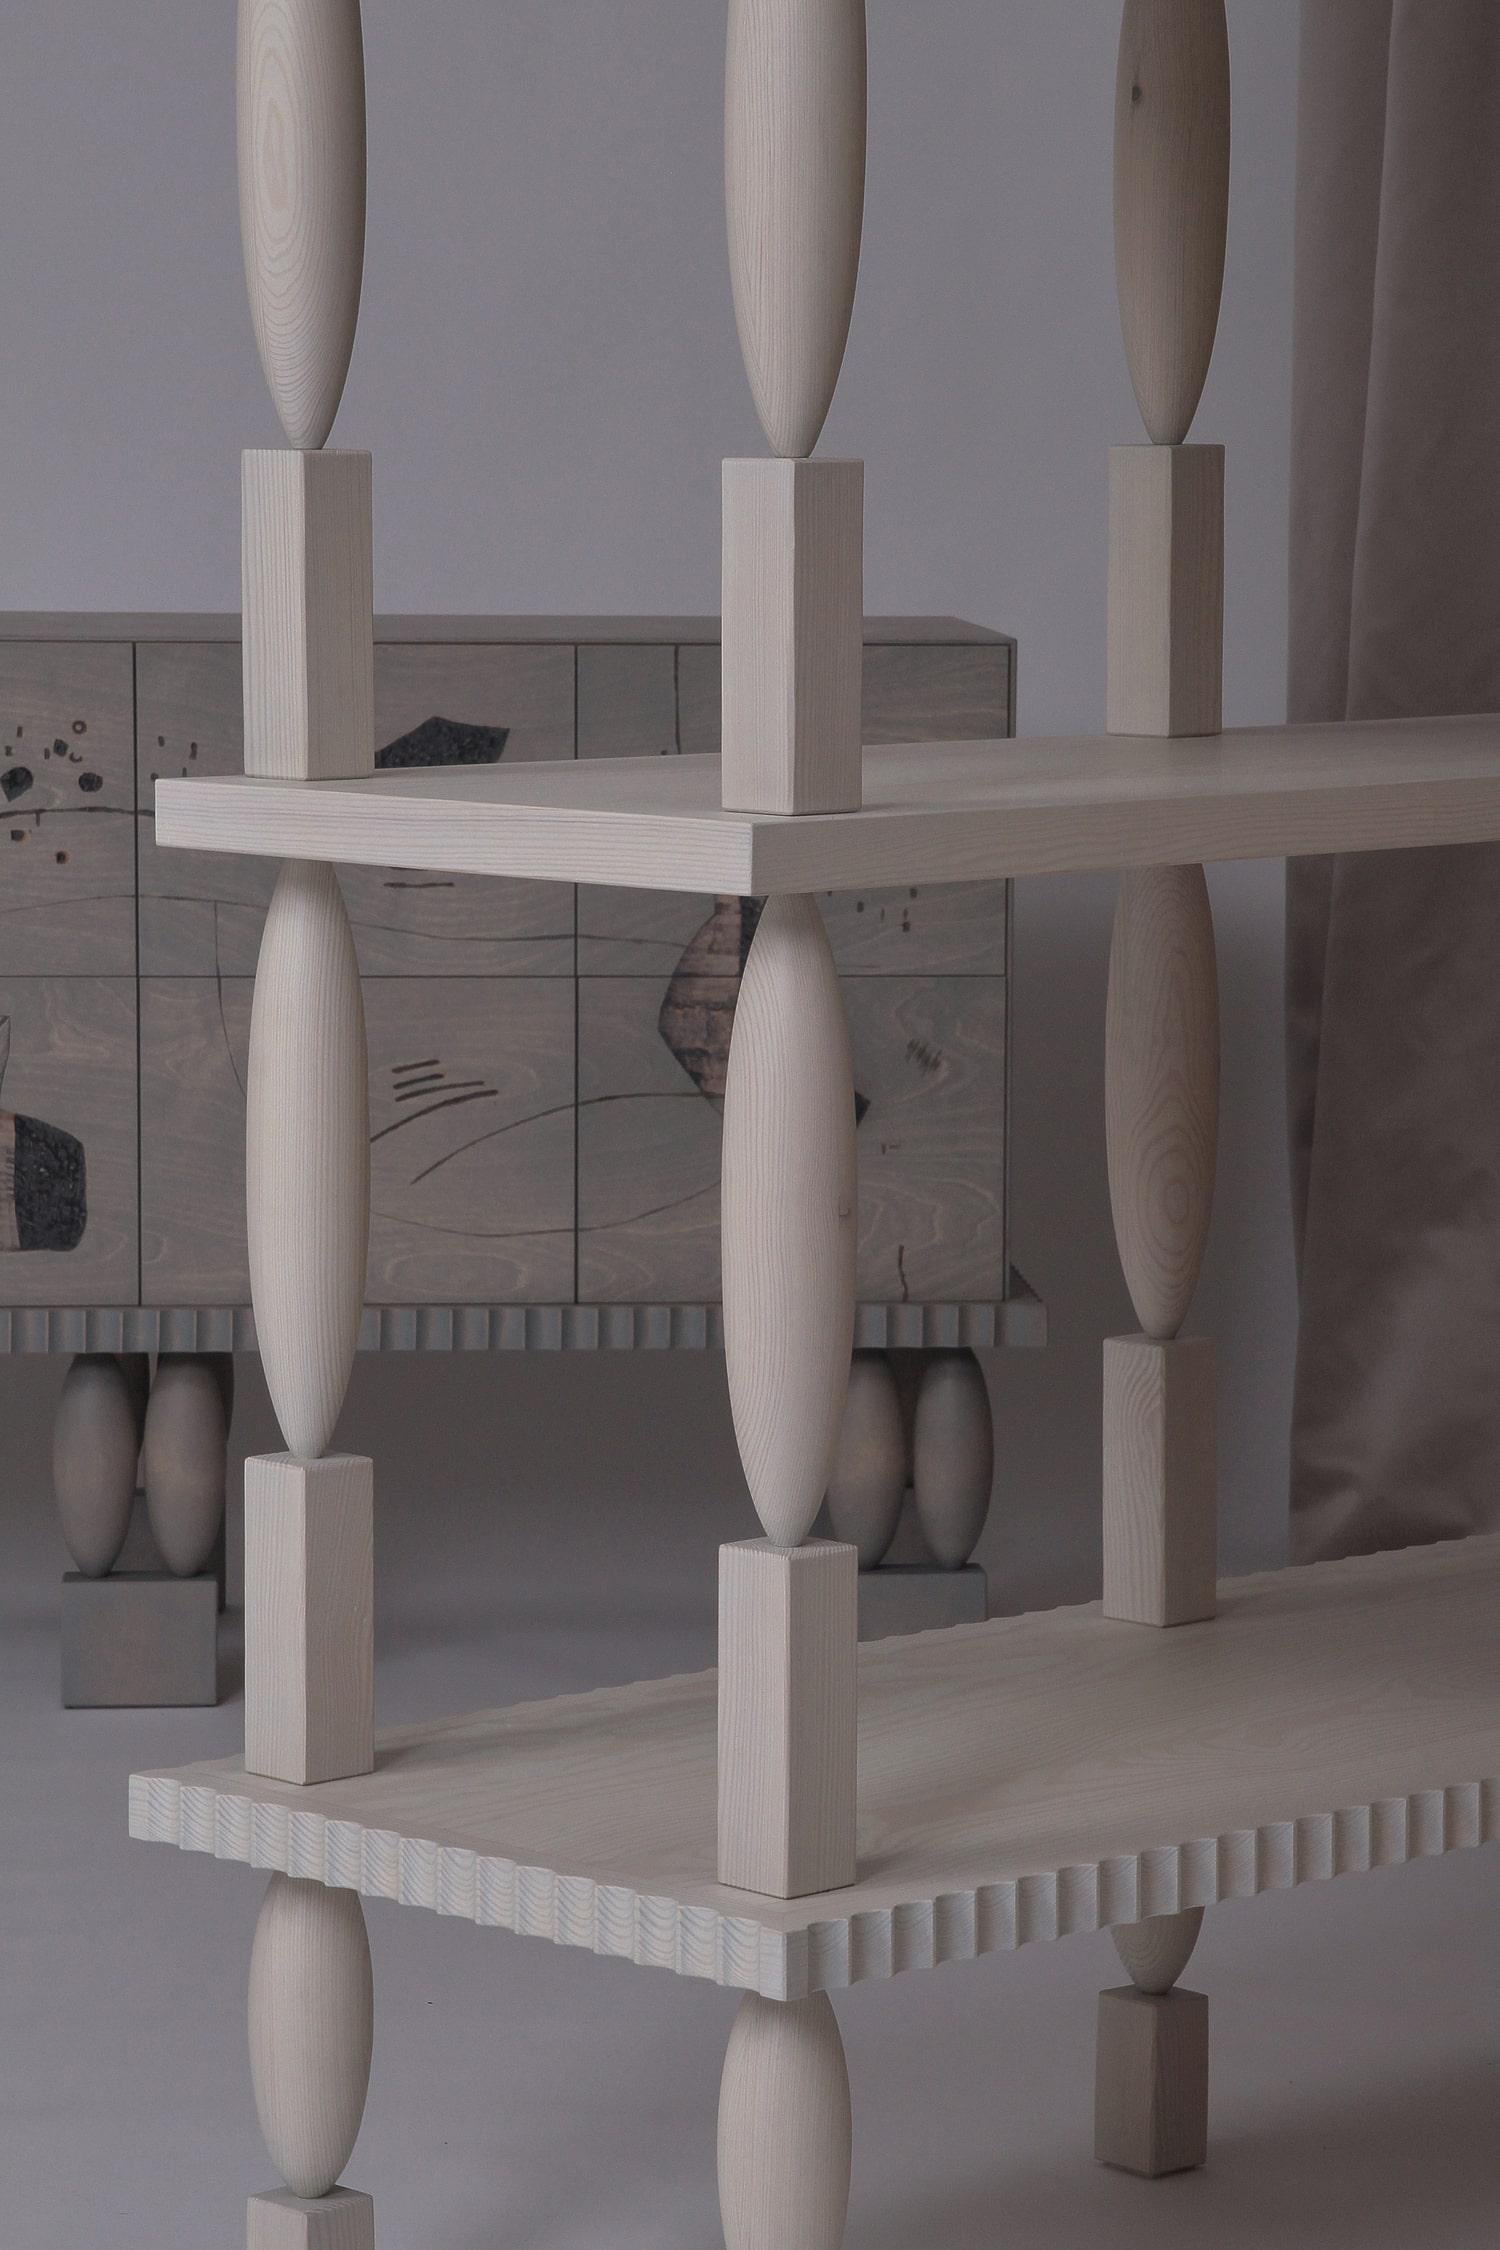 Zarte, matte Möbelkollektion mit weicher Haptik - inspiriert von der Ästhetik des Jugendstils. Der Jugendstil orientiert sich an den Werken von Jugendstilkünstlern wie František Bílek. Als Hommage an ihre Interdisziplinarität überschreiten die Möbel